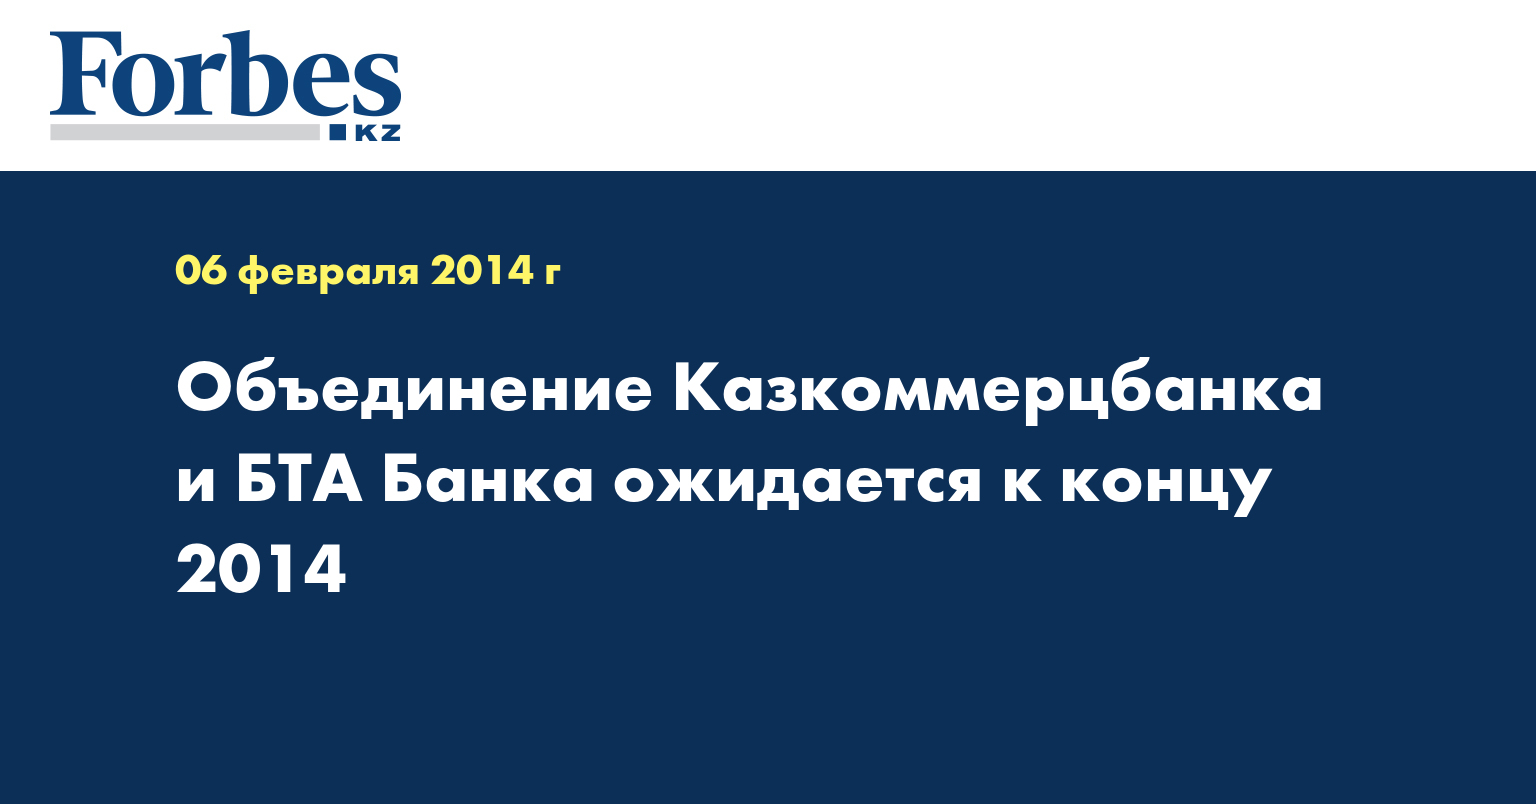 Объединение Казкоммерцбанка и БТА Банка ожидается к концу 2014